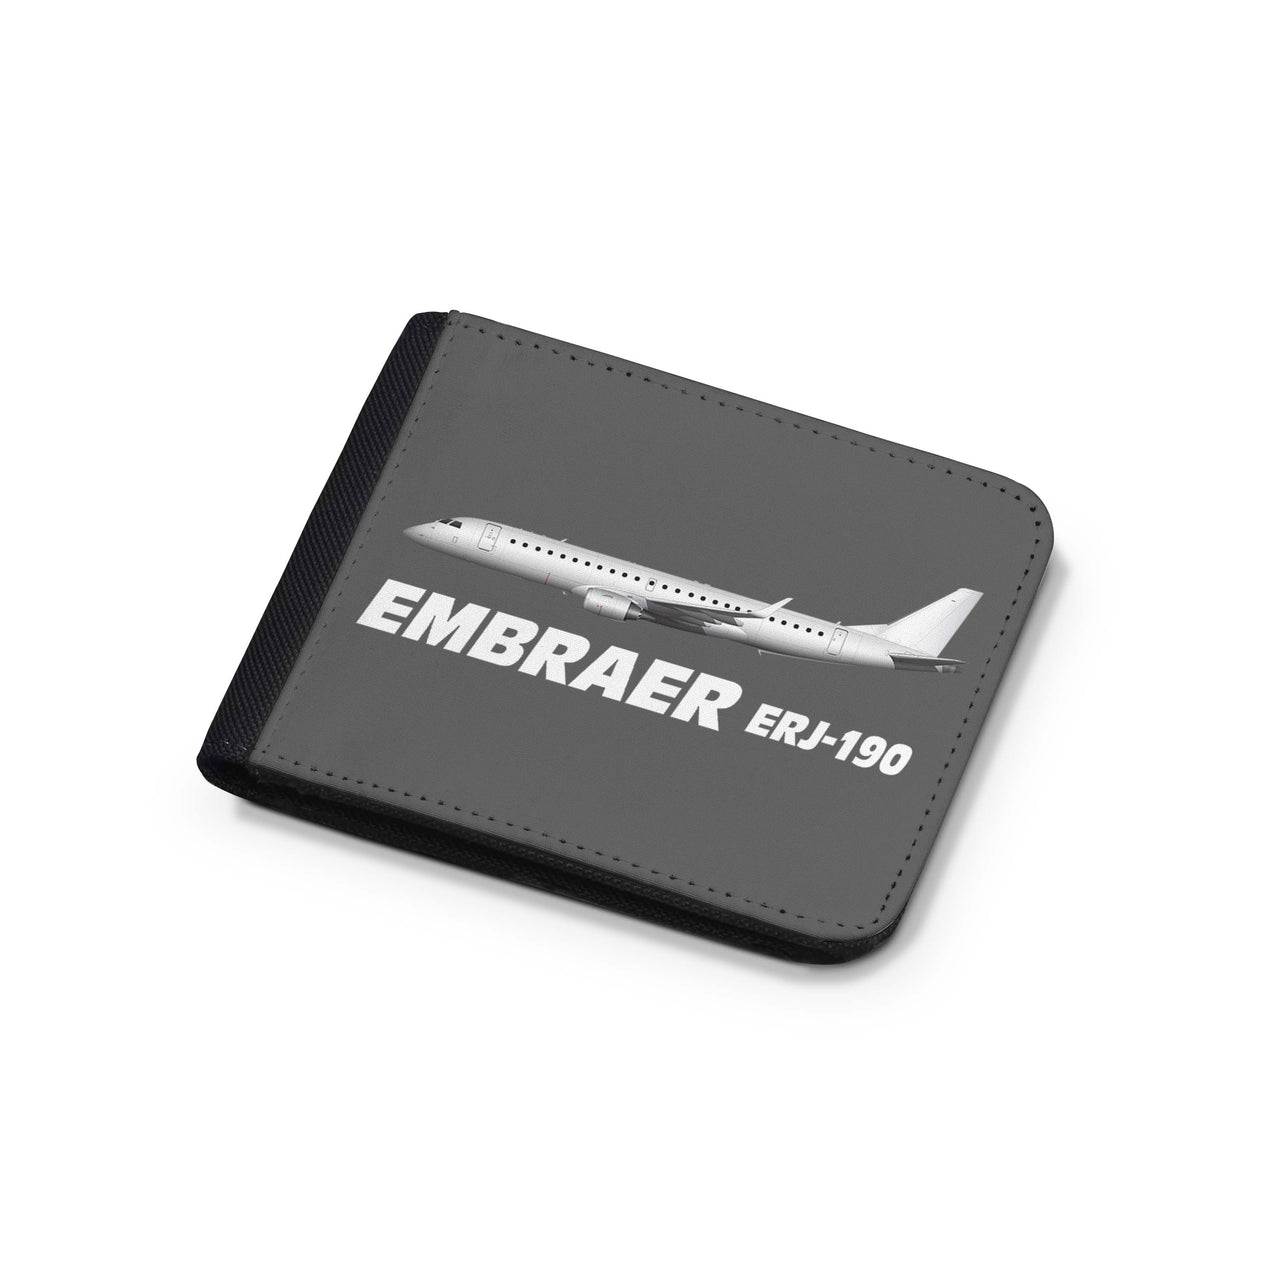 The Embraer ERJ-190 Designed Wallets